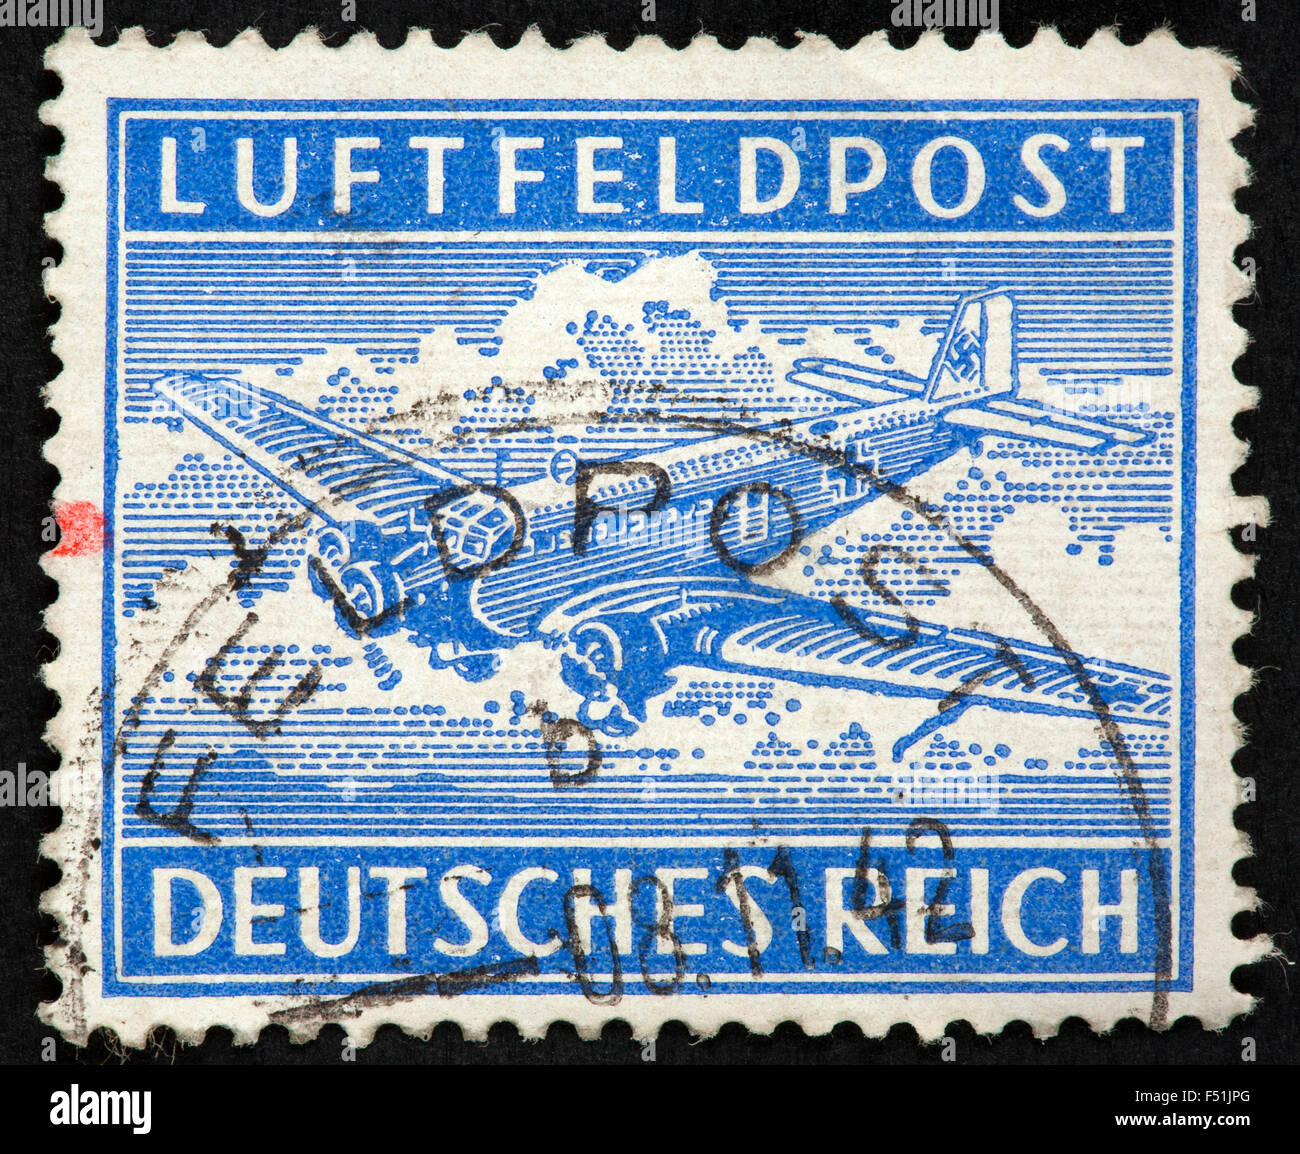 Deutsche Luftpost-Briefmarke Stockfoto, Bild: 89161816 - Alamy